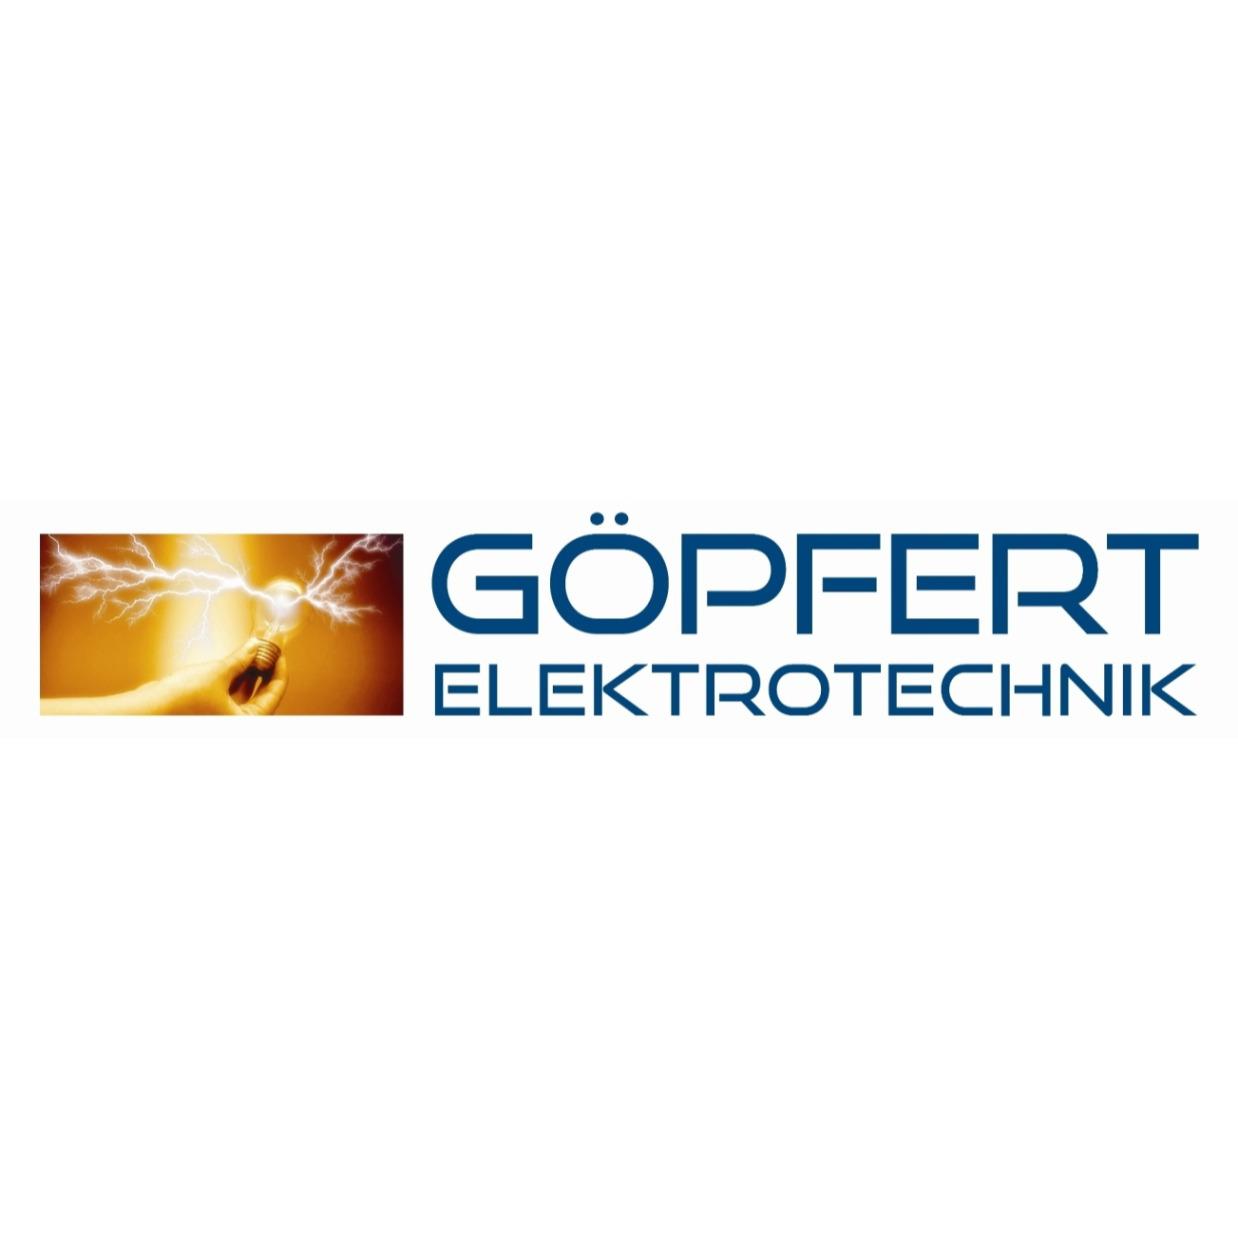 Göpfert Elektrotechnik GmbH in München - Logo